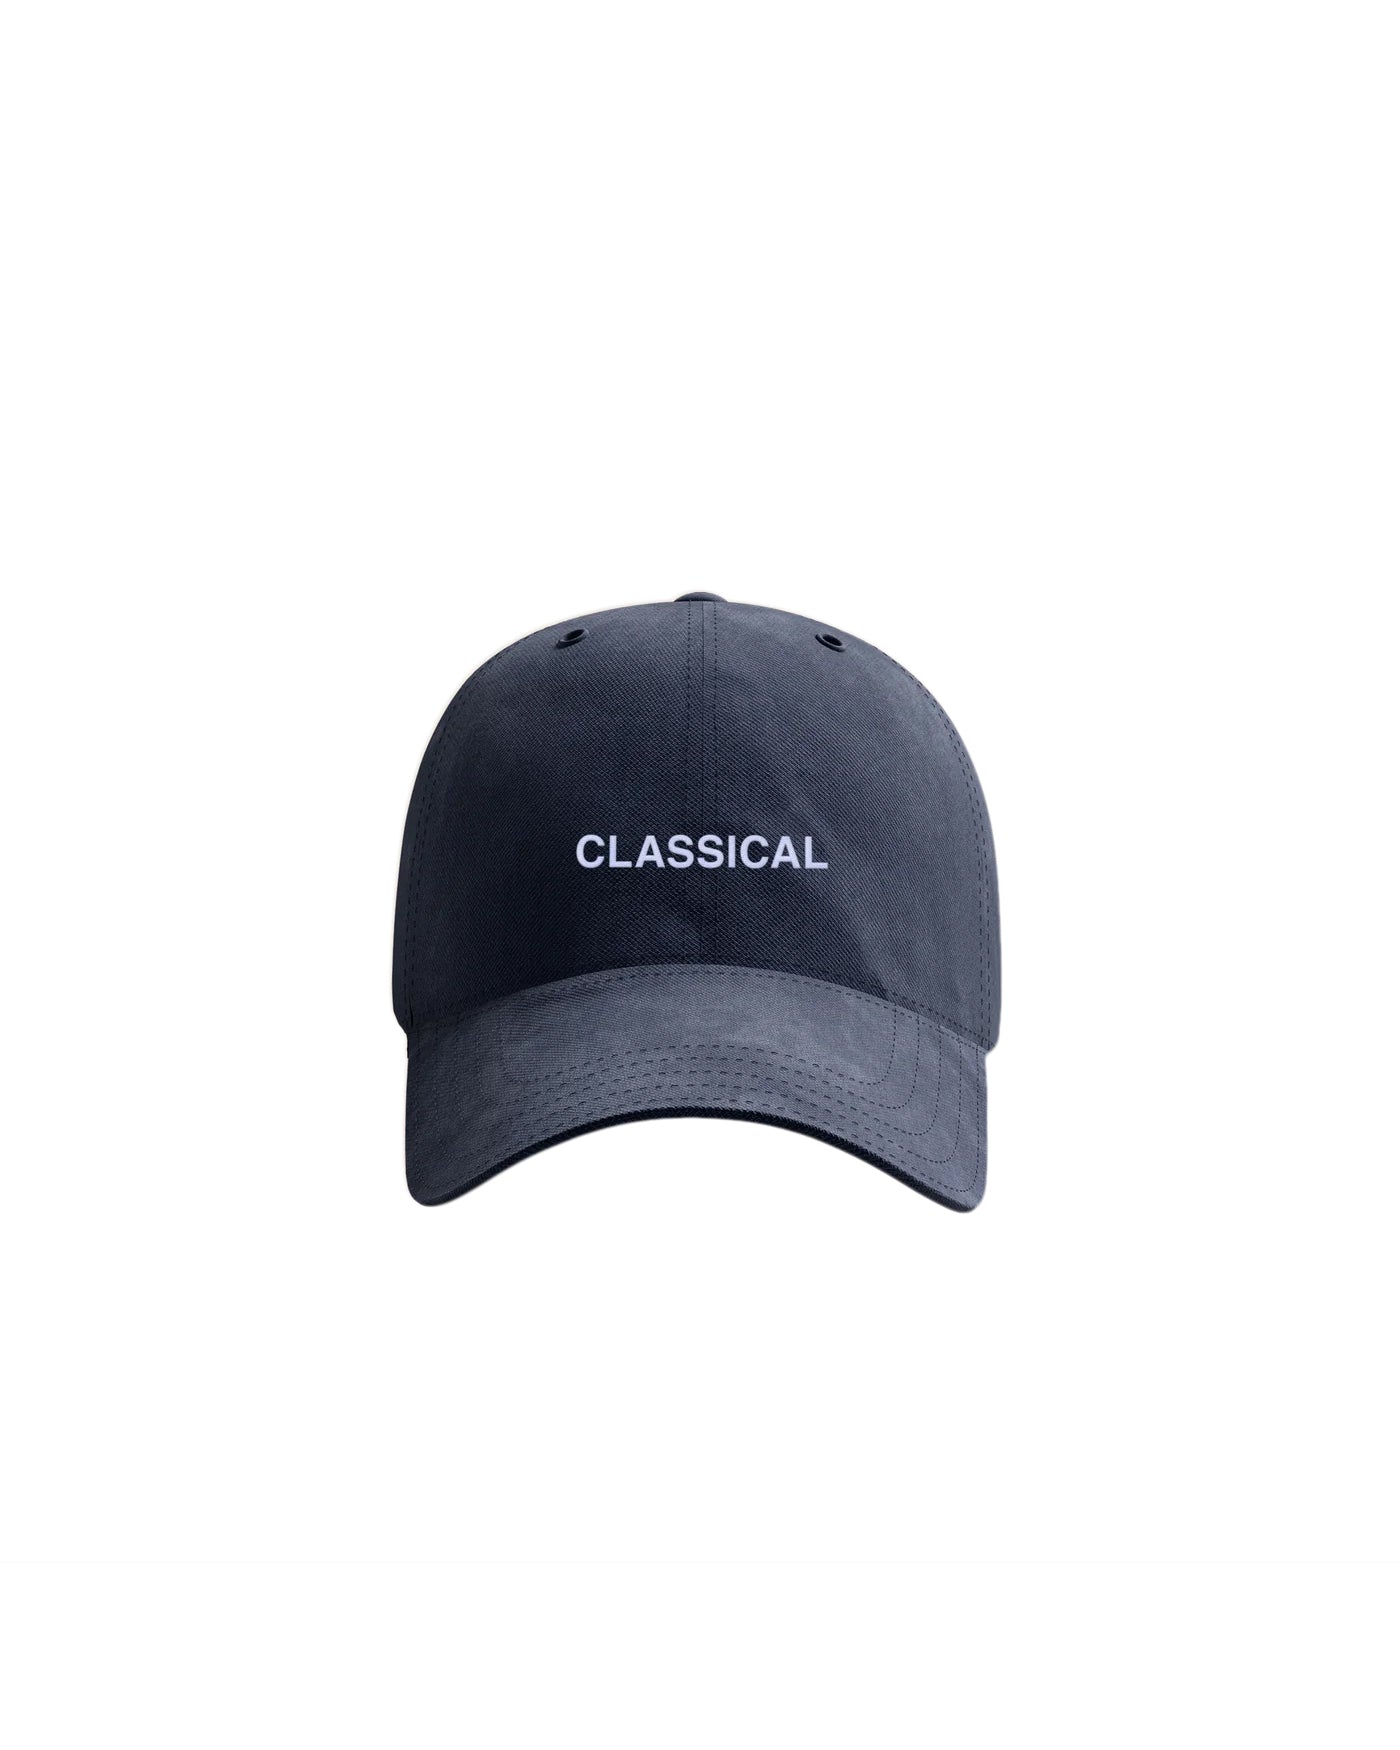 Classical Dad Hat